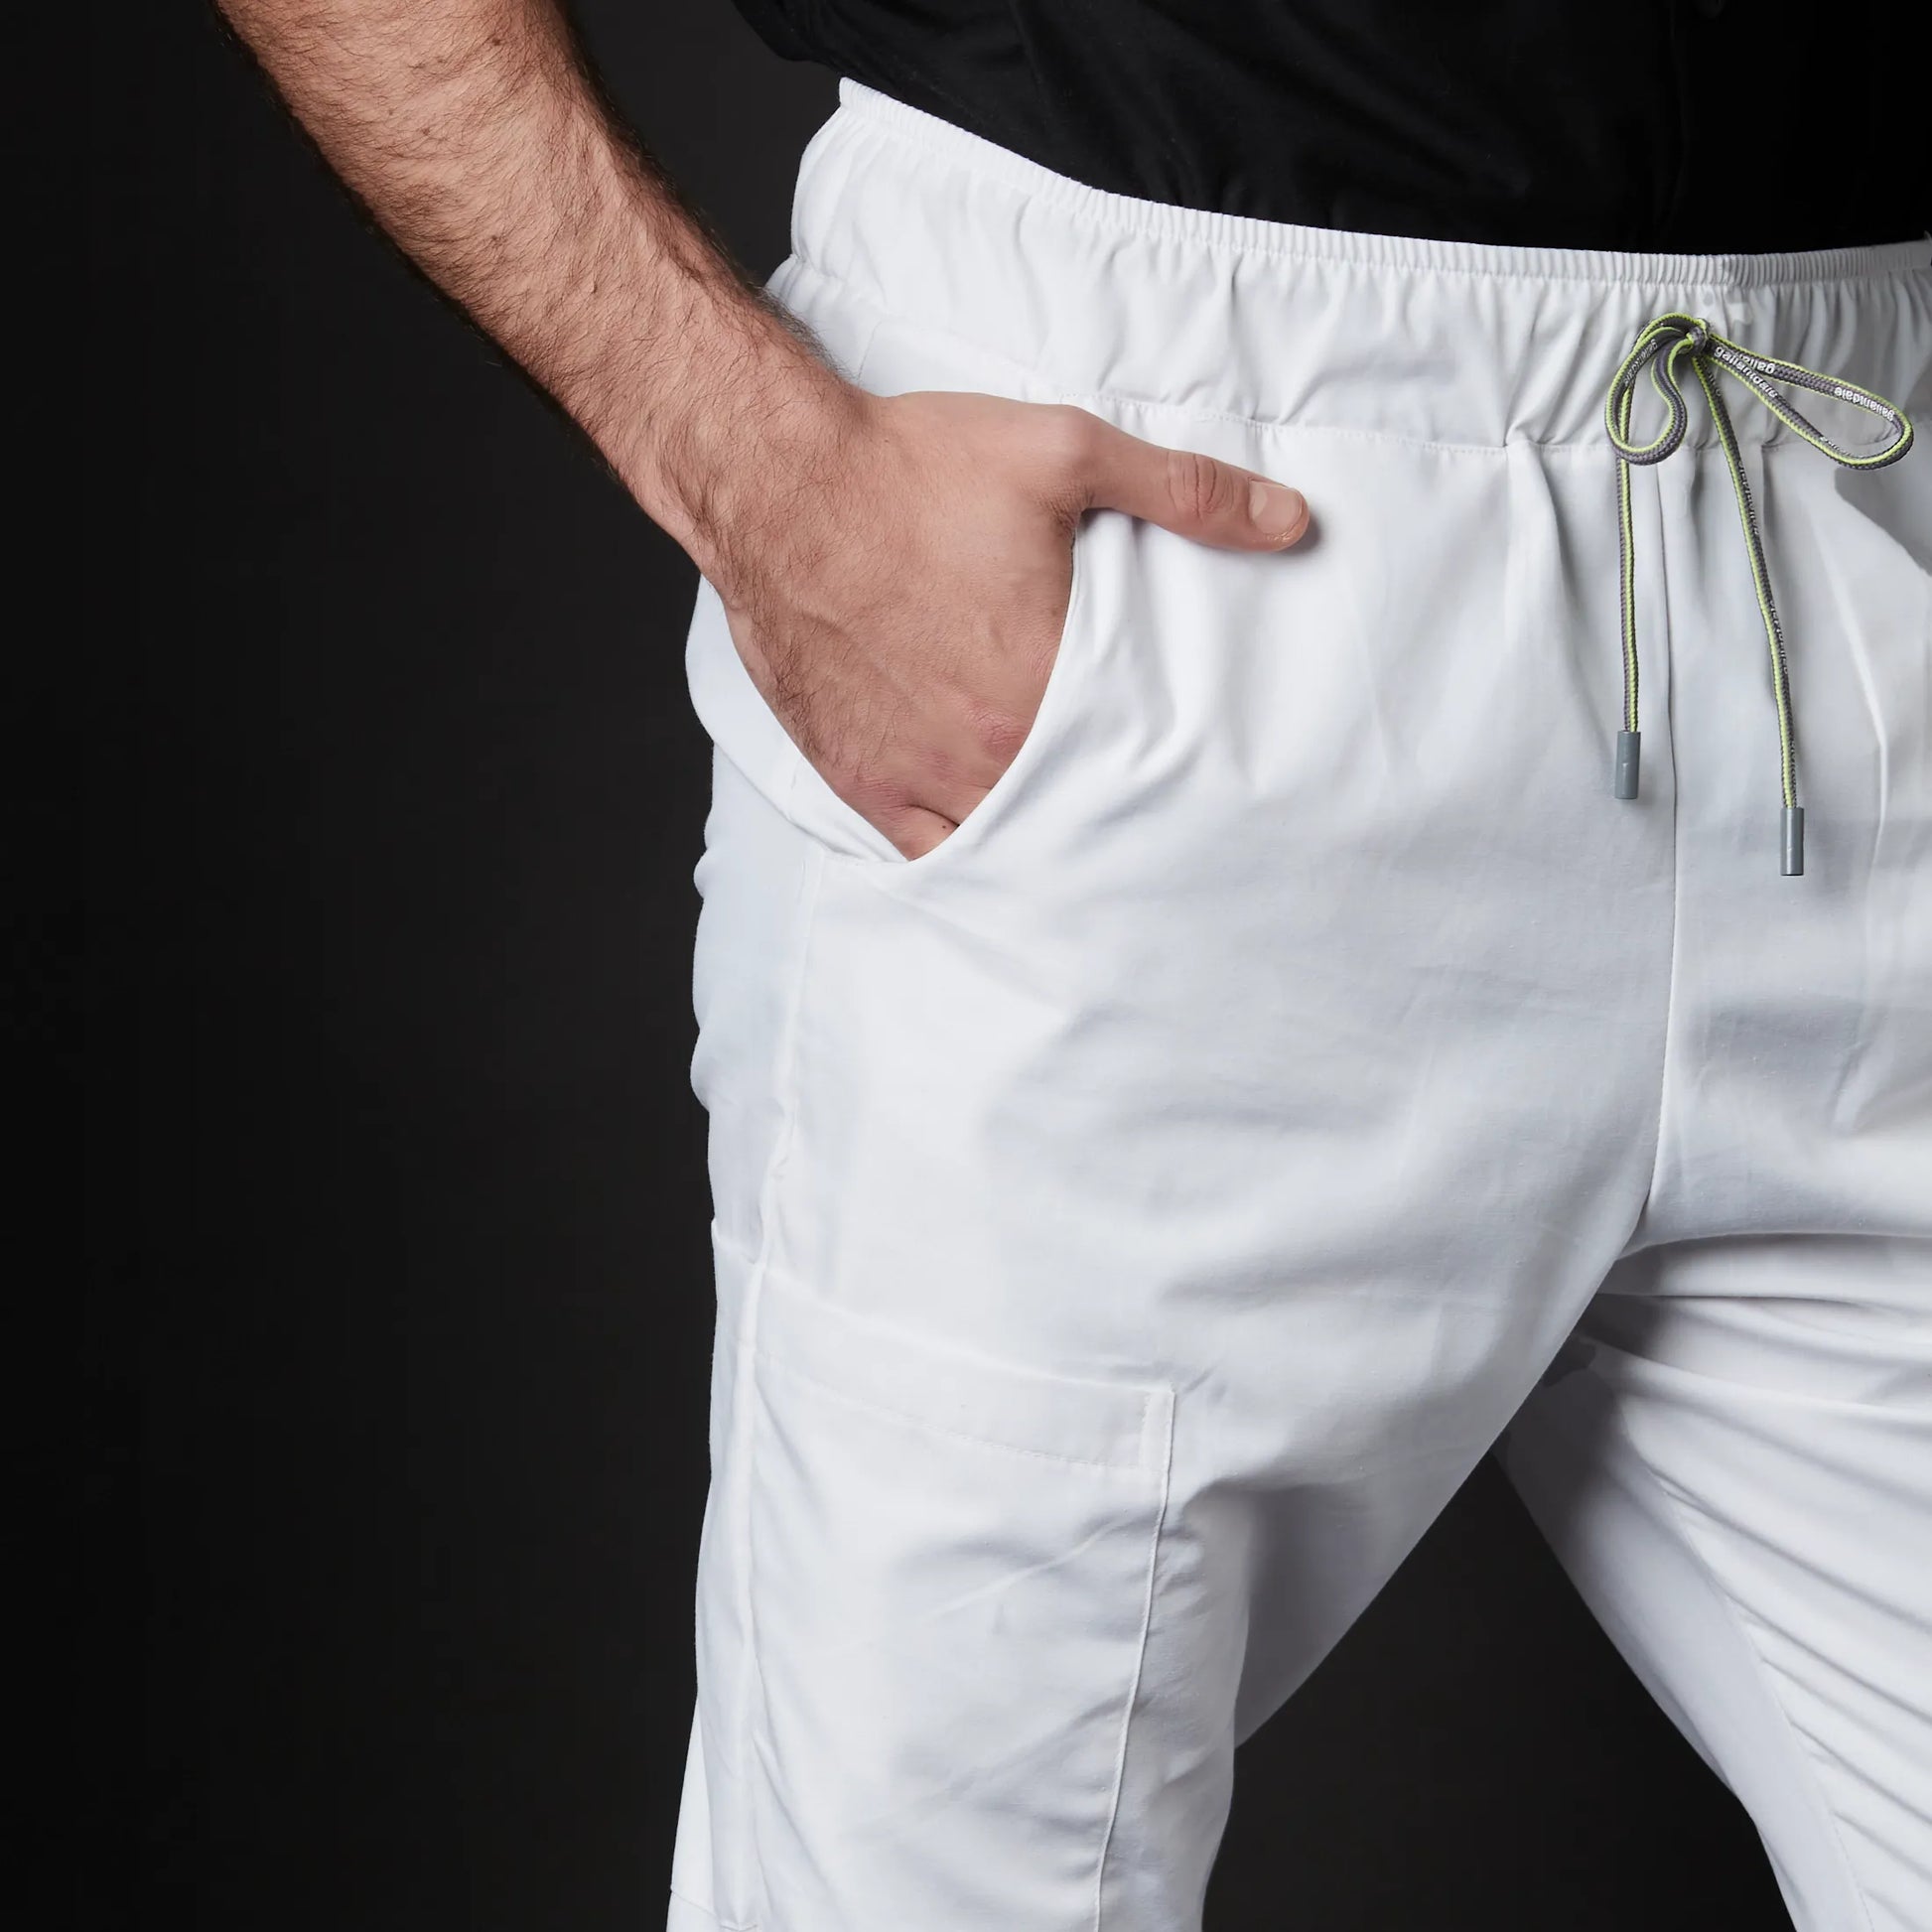 Pantalón Hombre Blanco, Uniformes Clínicos